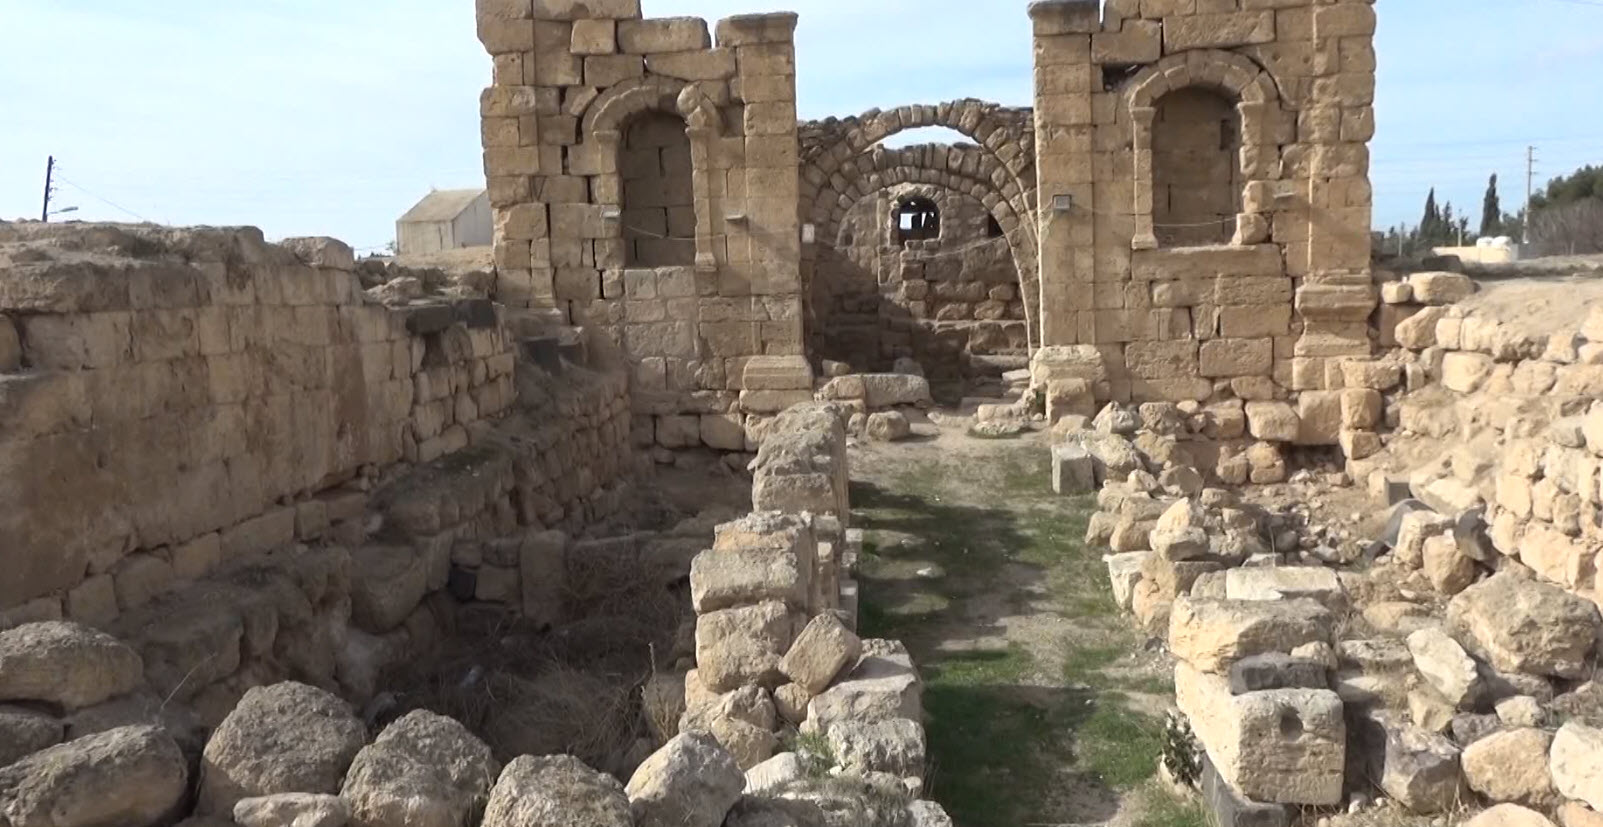 اهمال واضح وكبير للمناطق الأثرية في الكرك، أبرزها "قلعة الربة".. تقرير تلفزيوني